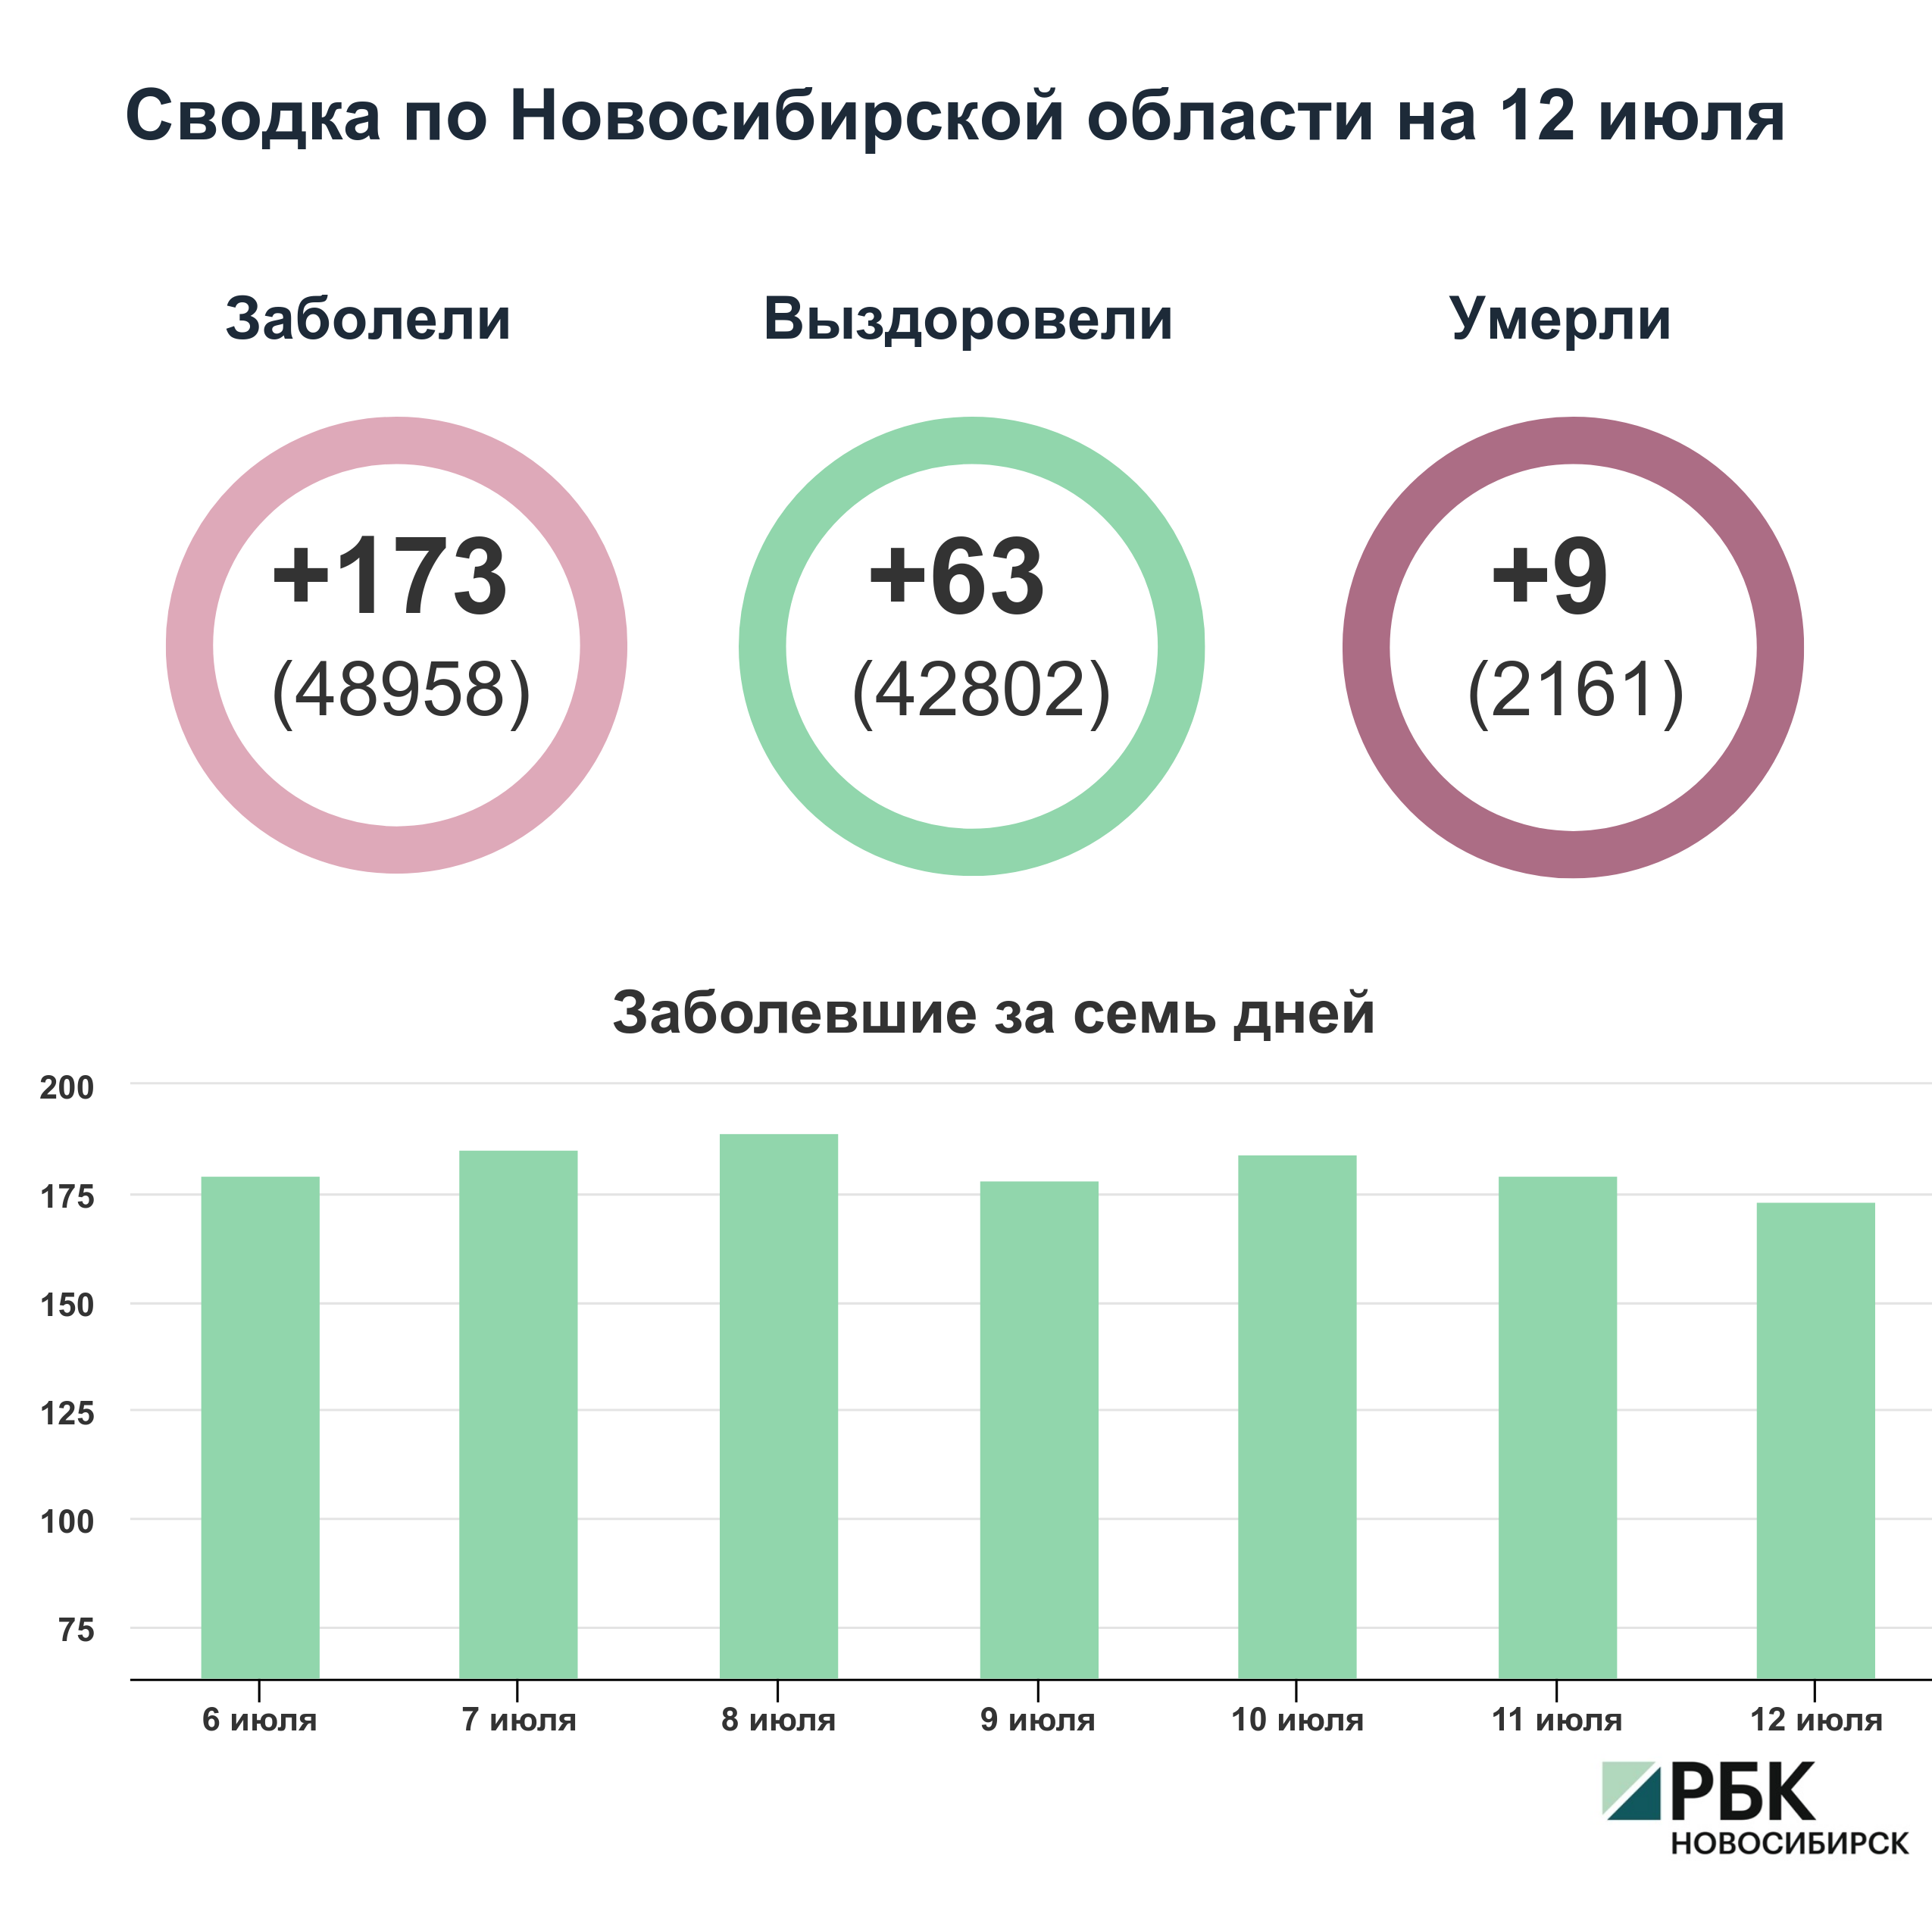 Коронавирус в Новосибирске: сводка на 12 июля